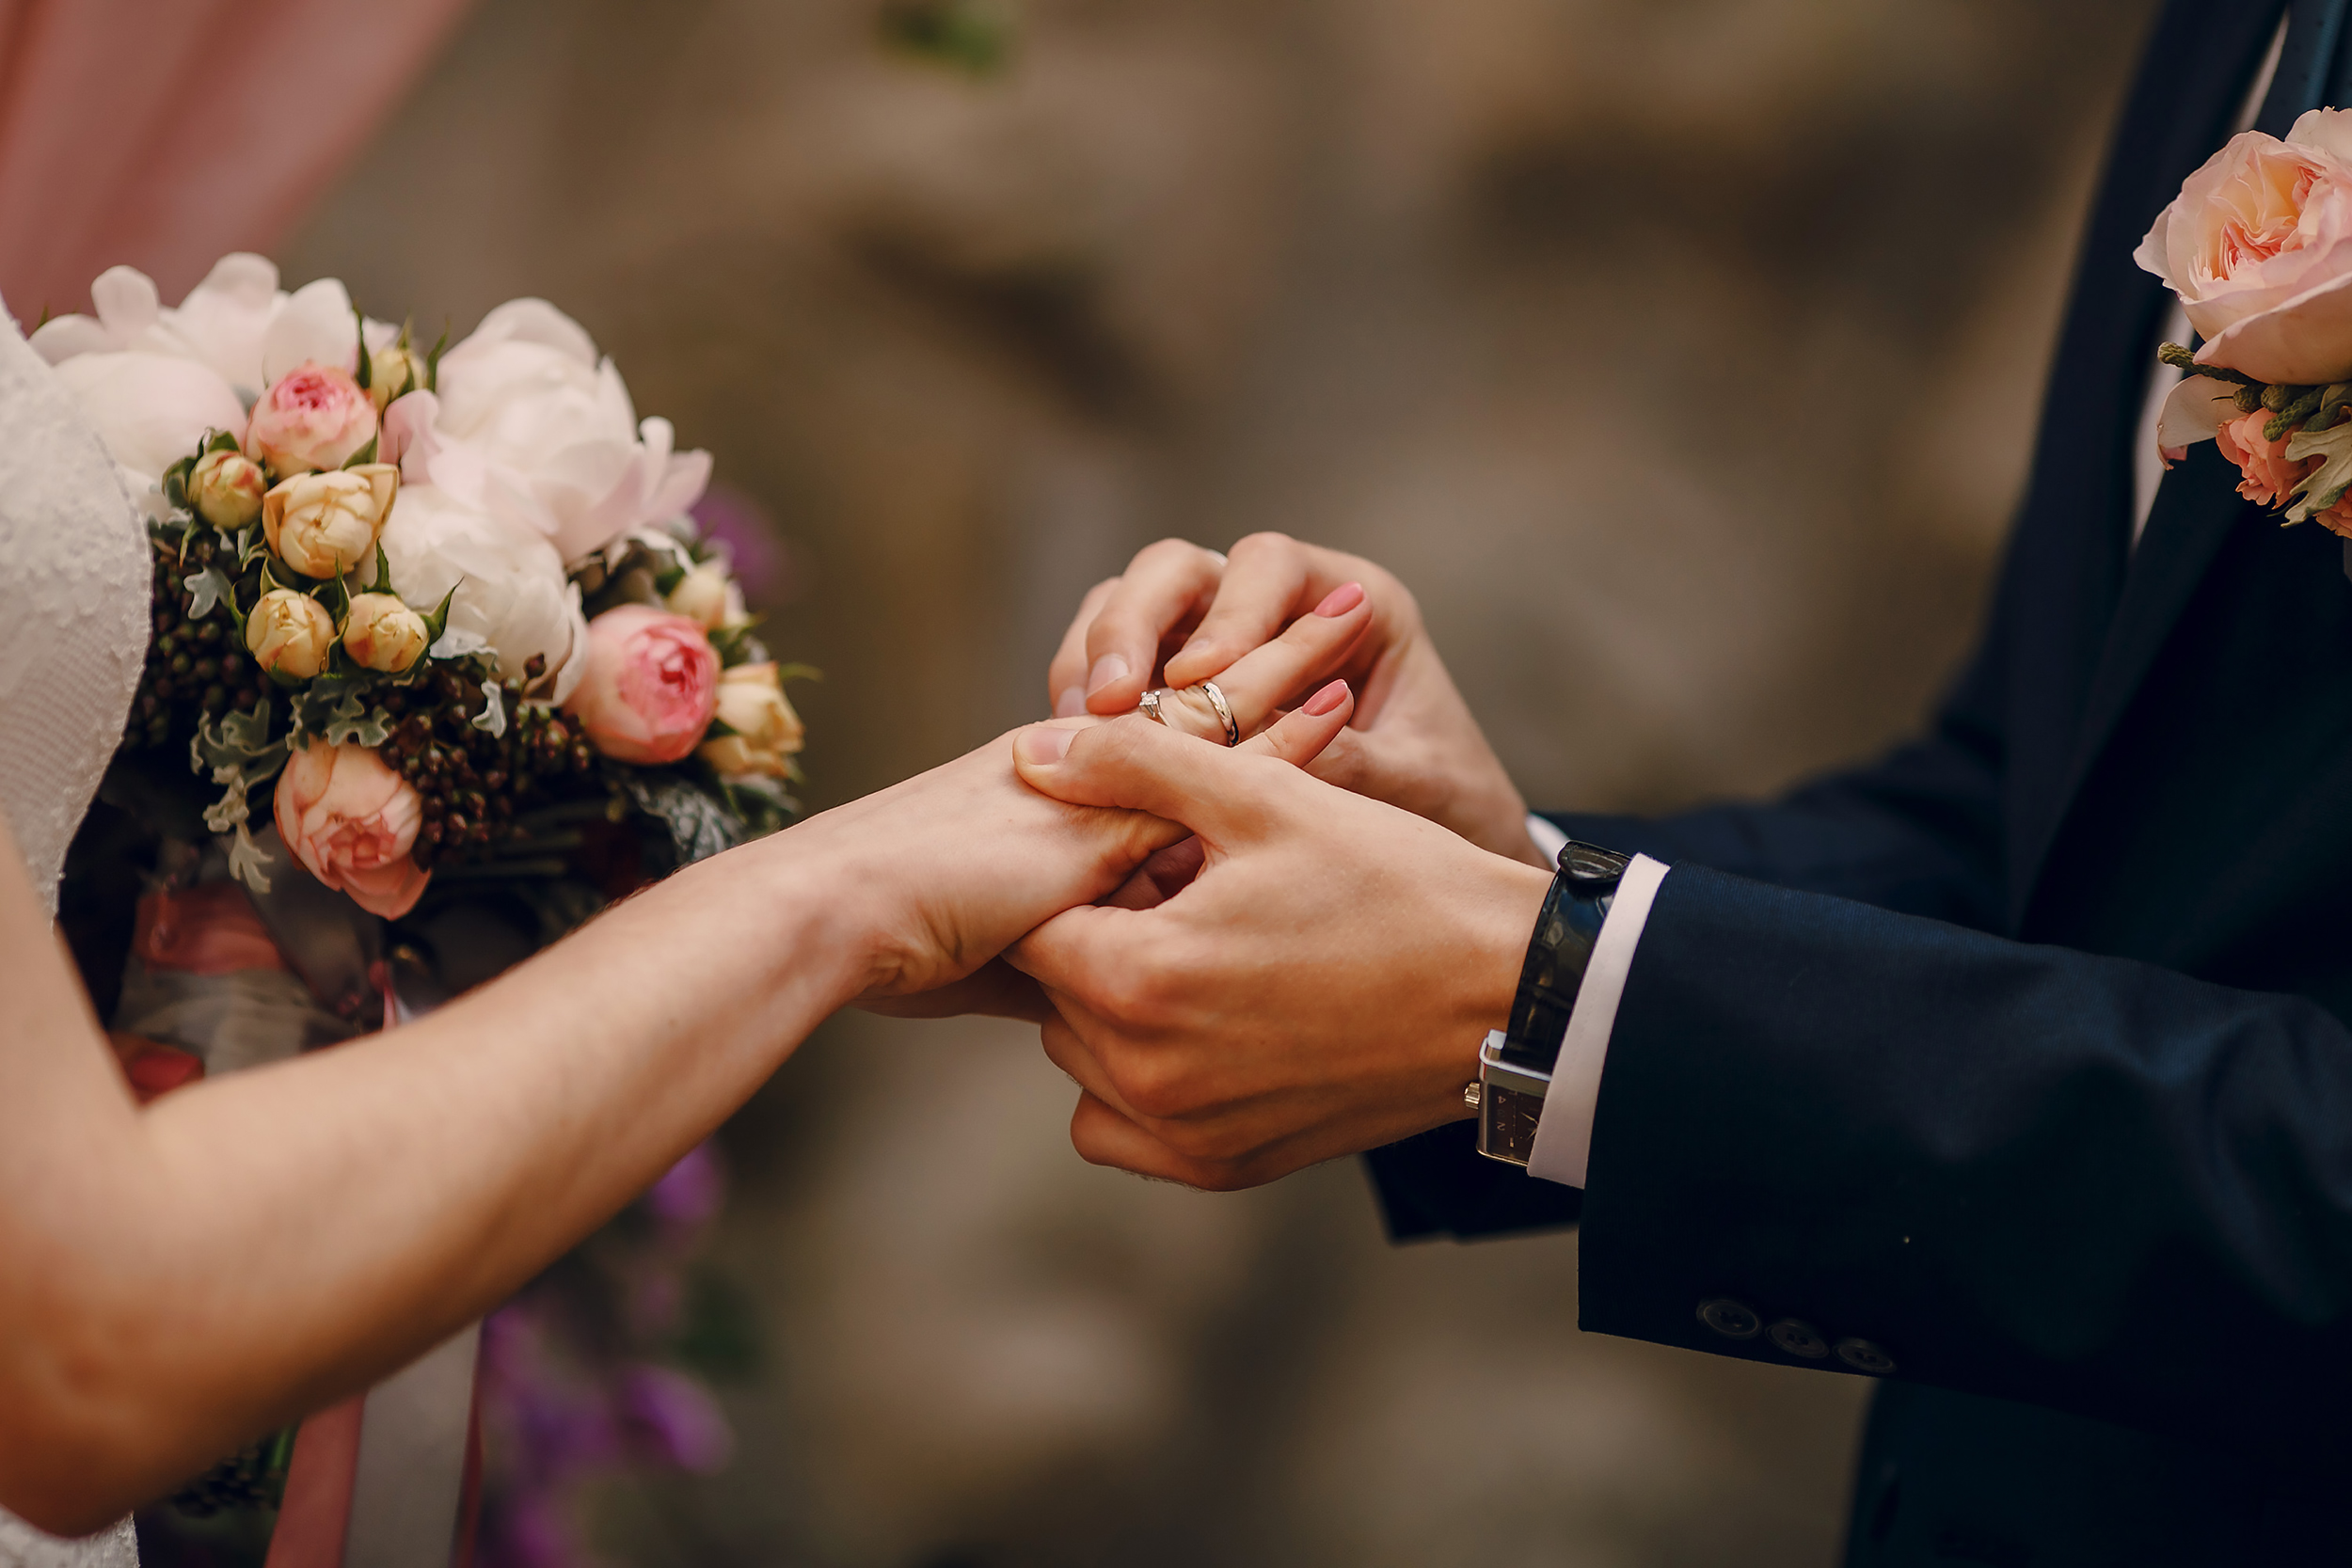 Evlənmənin ŞƏRTLƏRİ ağırlaşa bilər – Nikah öncəsi PSİXOLOJİ TEST də keçirilsin?